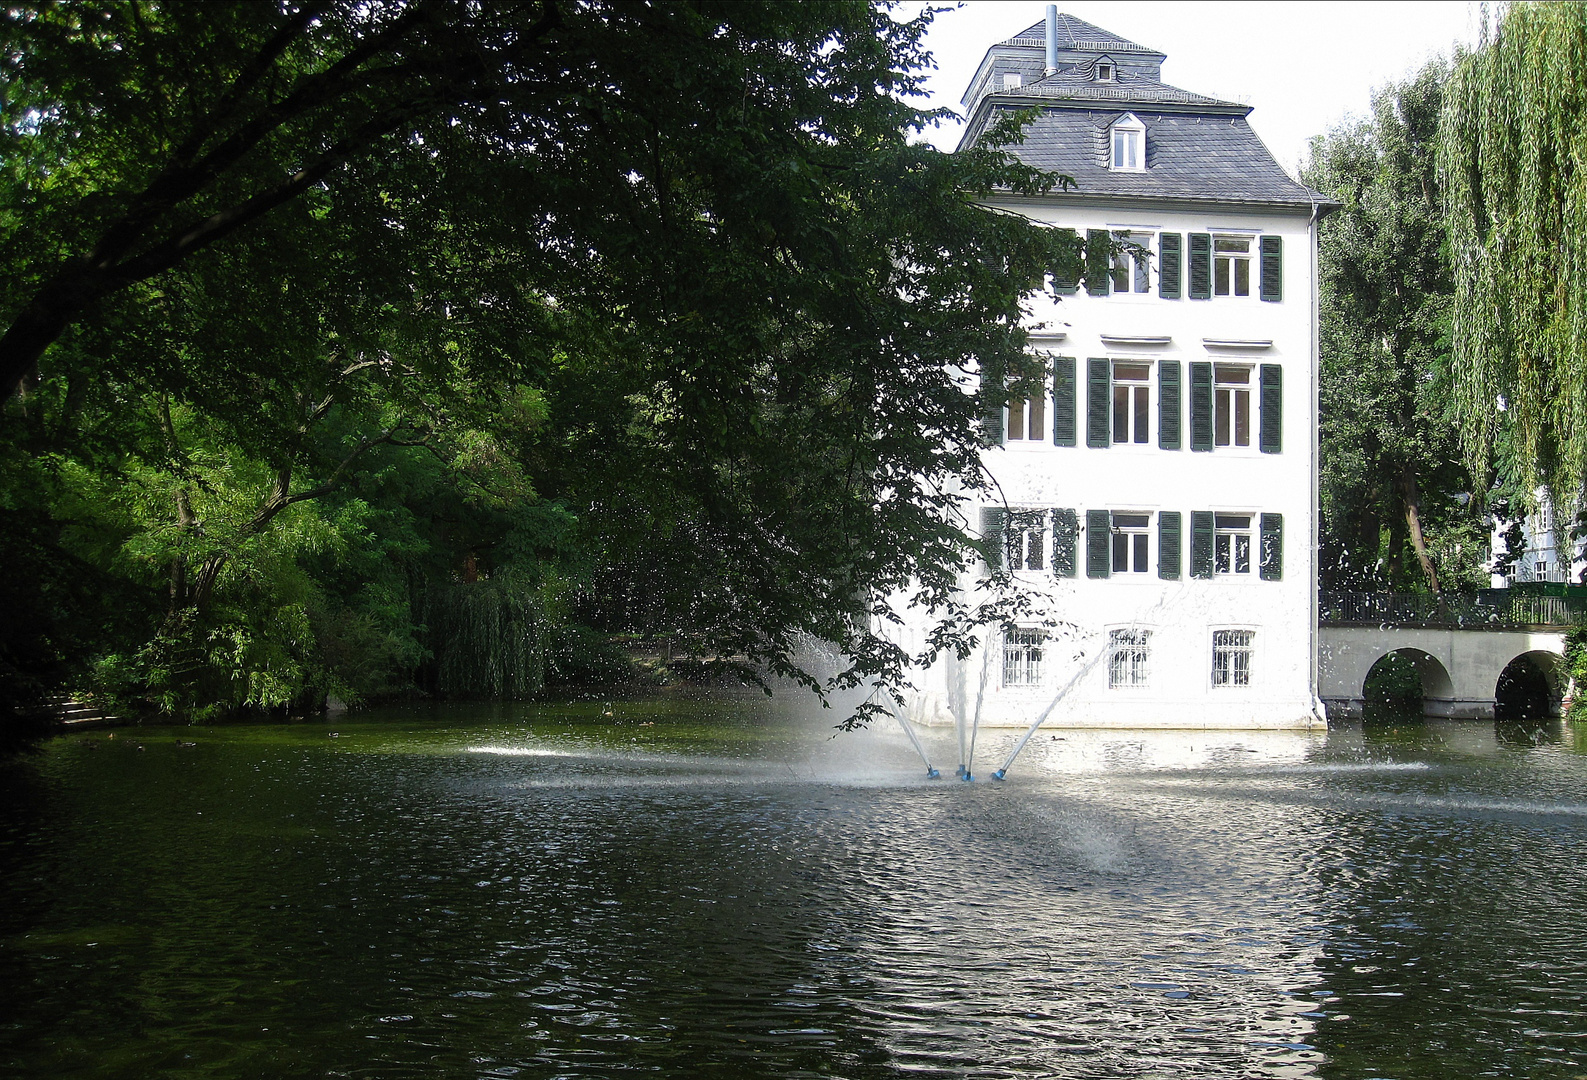 Wasserschloss Holzhausen mit Springbrunnen im See